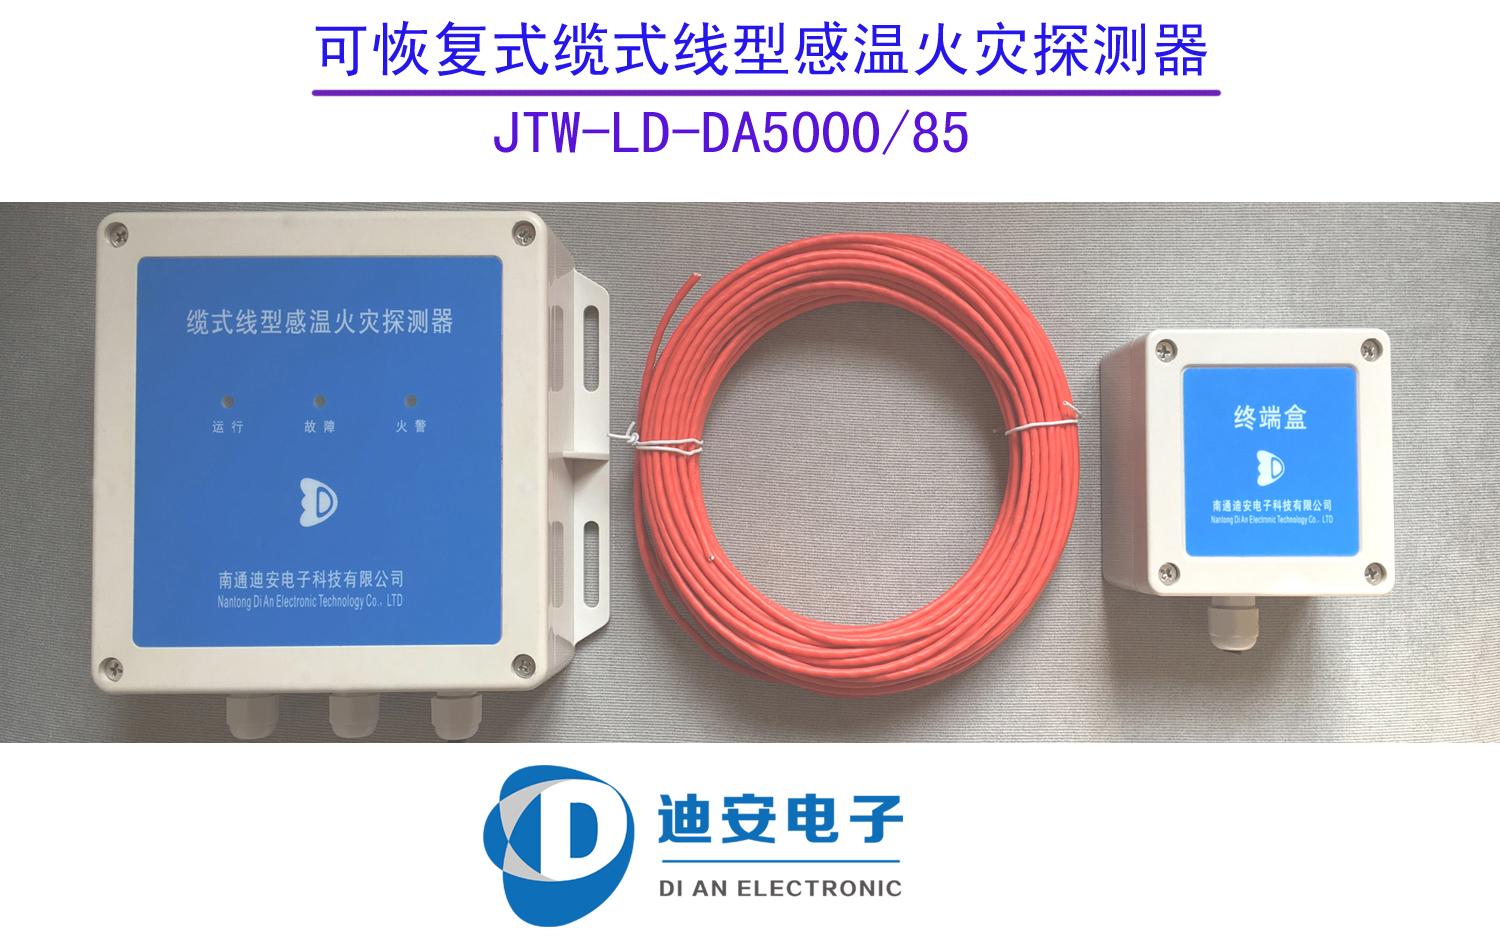 JTW-LD-DA5000专业生产销售定温感温电缆